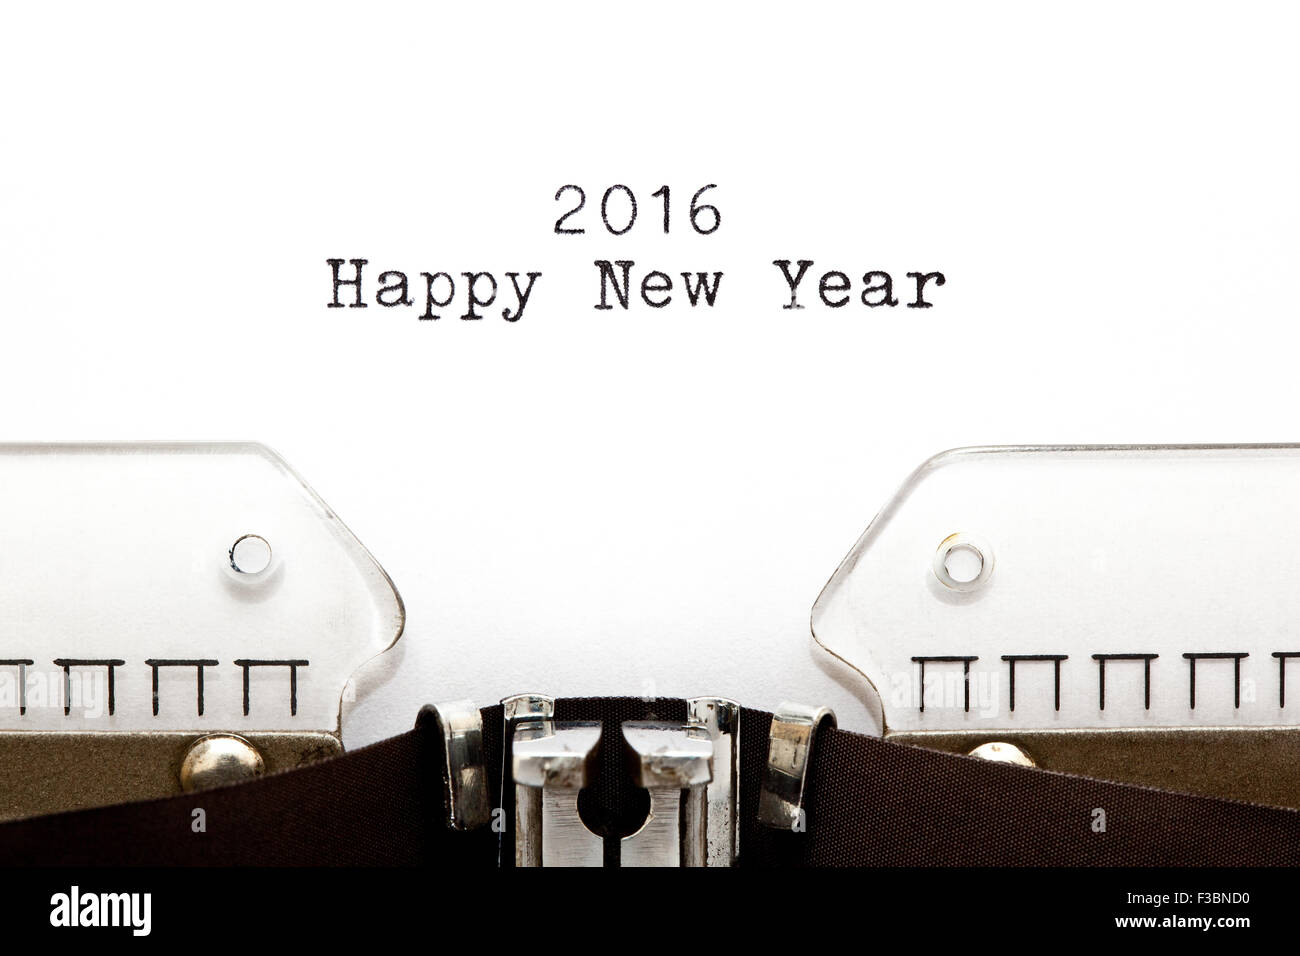 Felice Anno Nuovo 2016 scritto sul retro della macchina da scrivere. Foto Stock